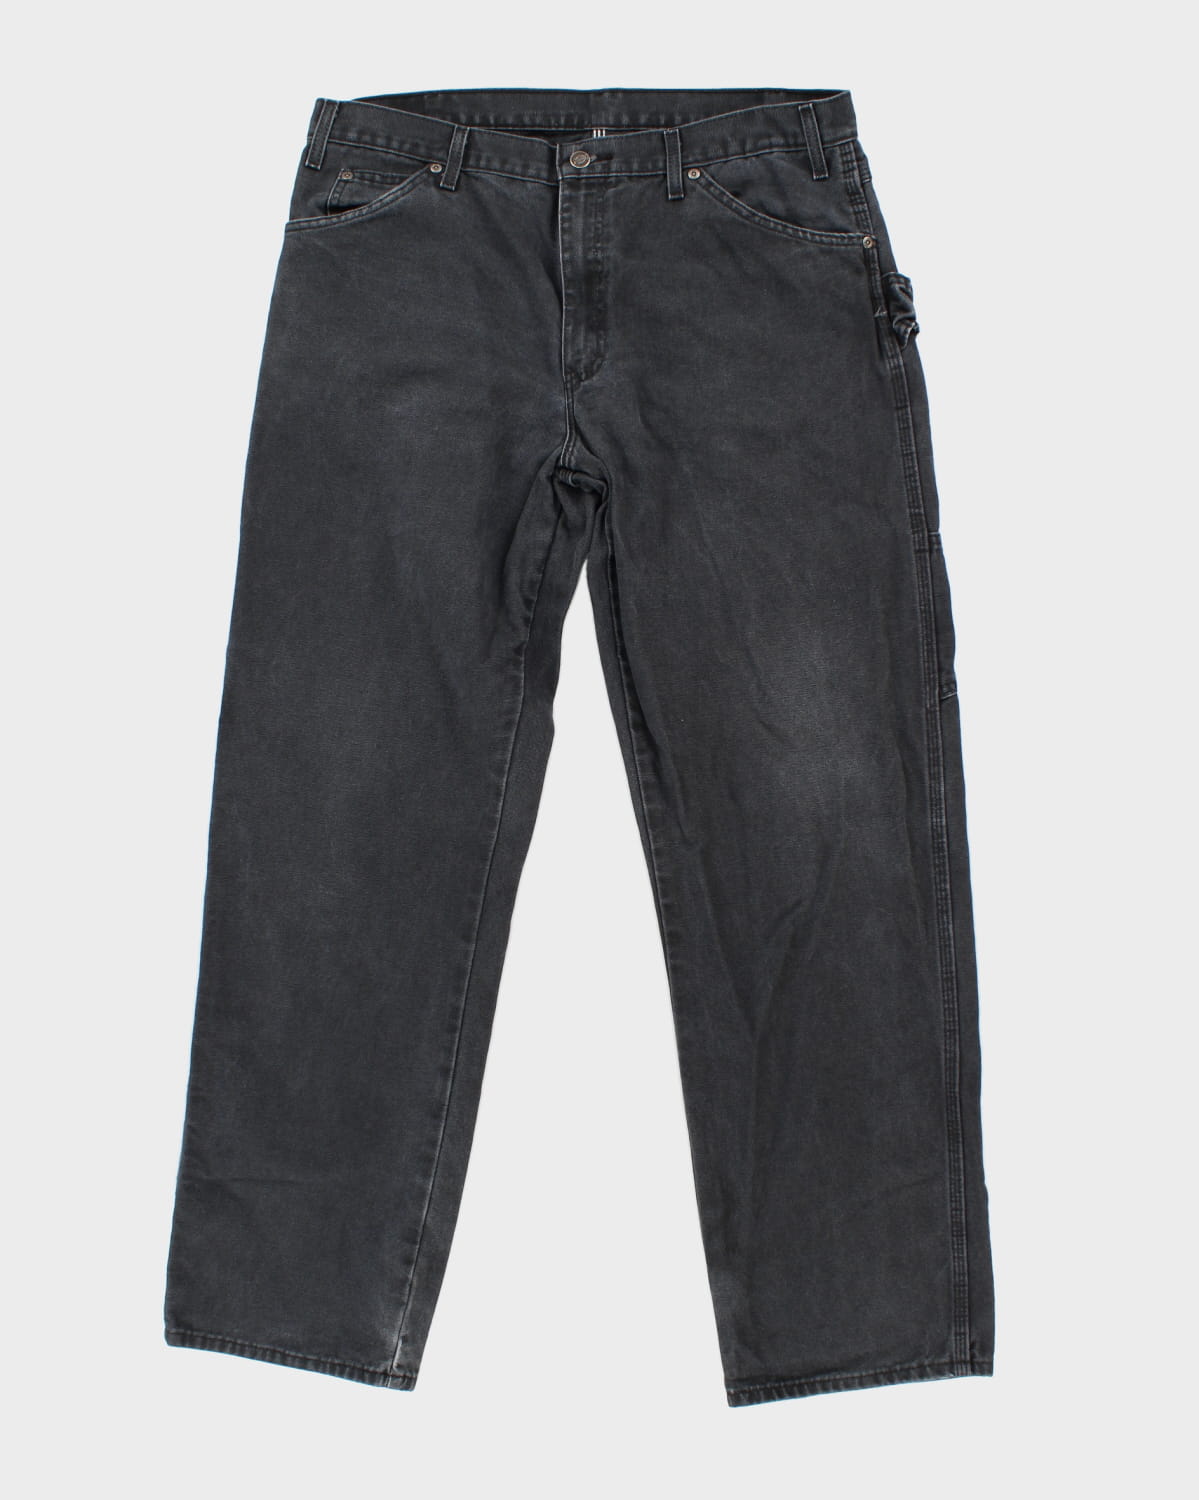 Dickies Black Carpenter Trousers - W36 L32